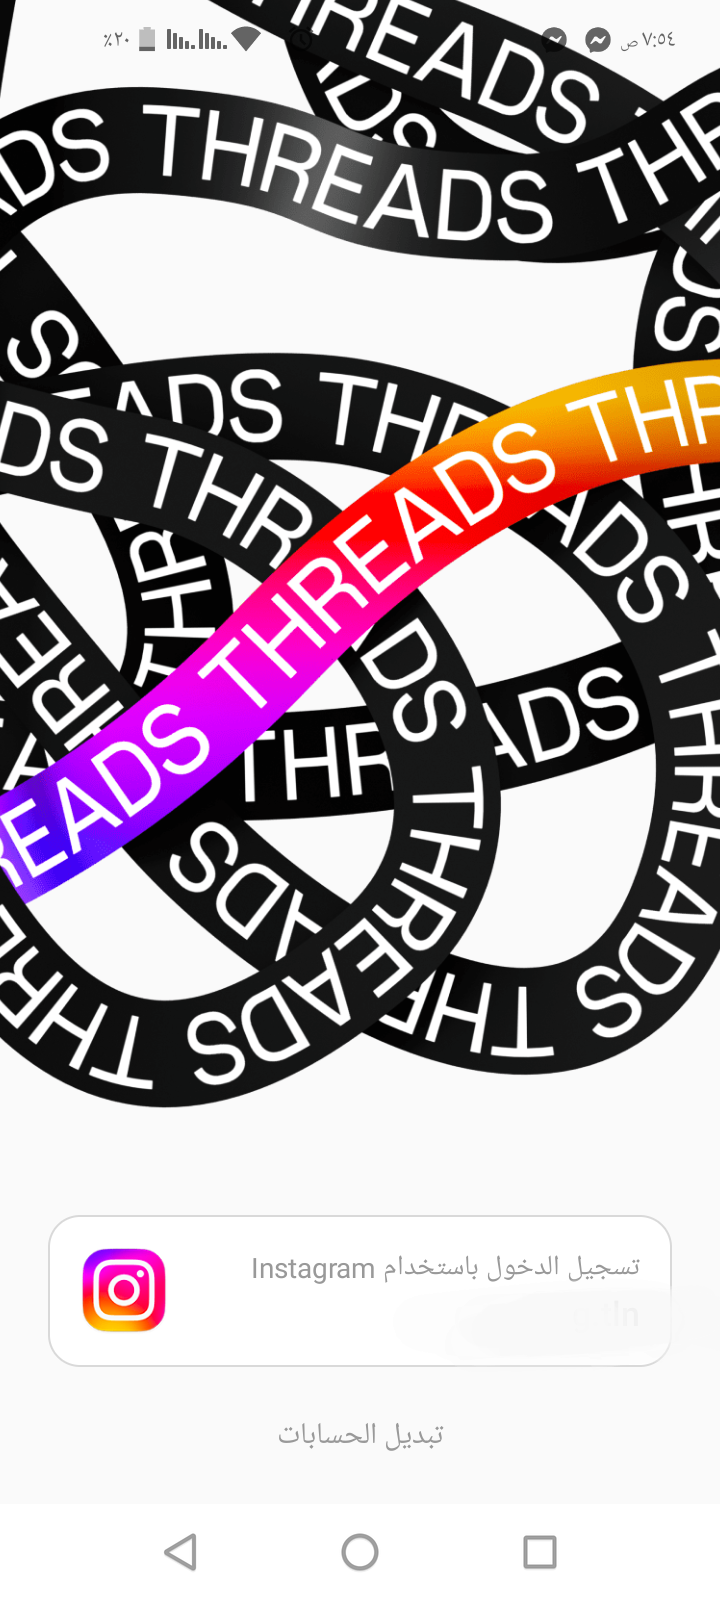 تطبيق ثريدز Threads الجديد